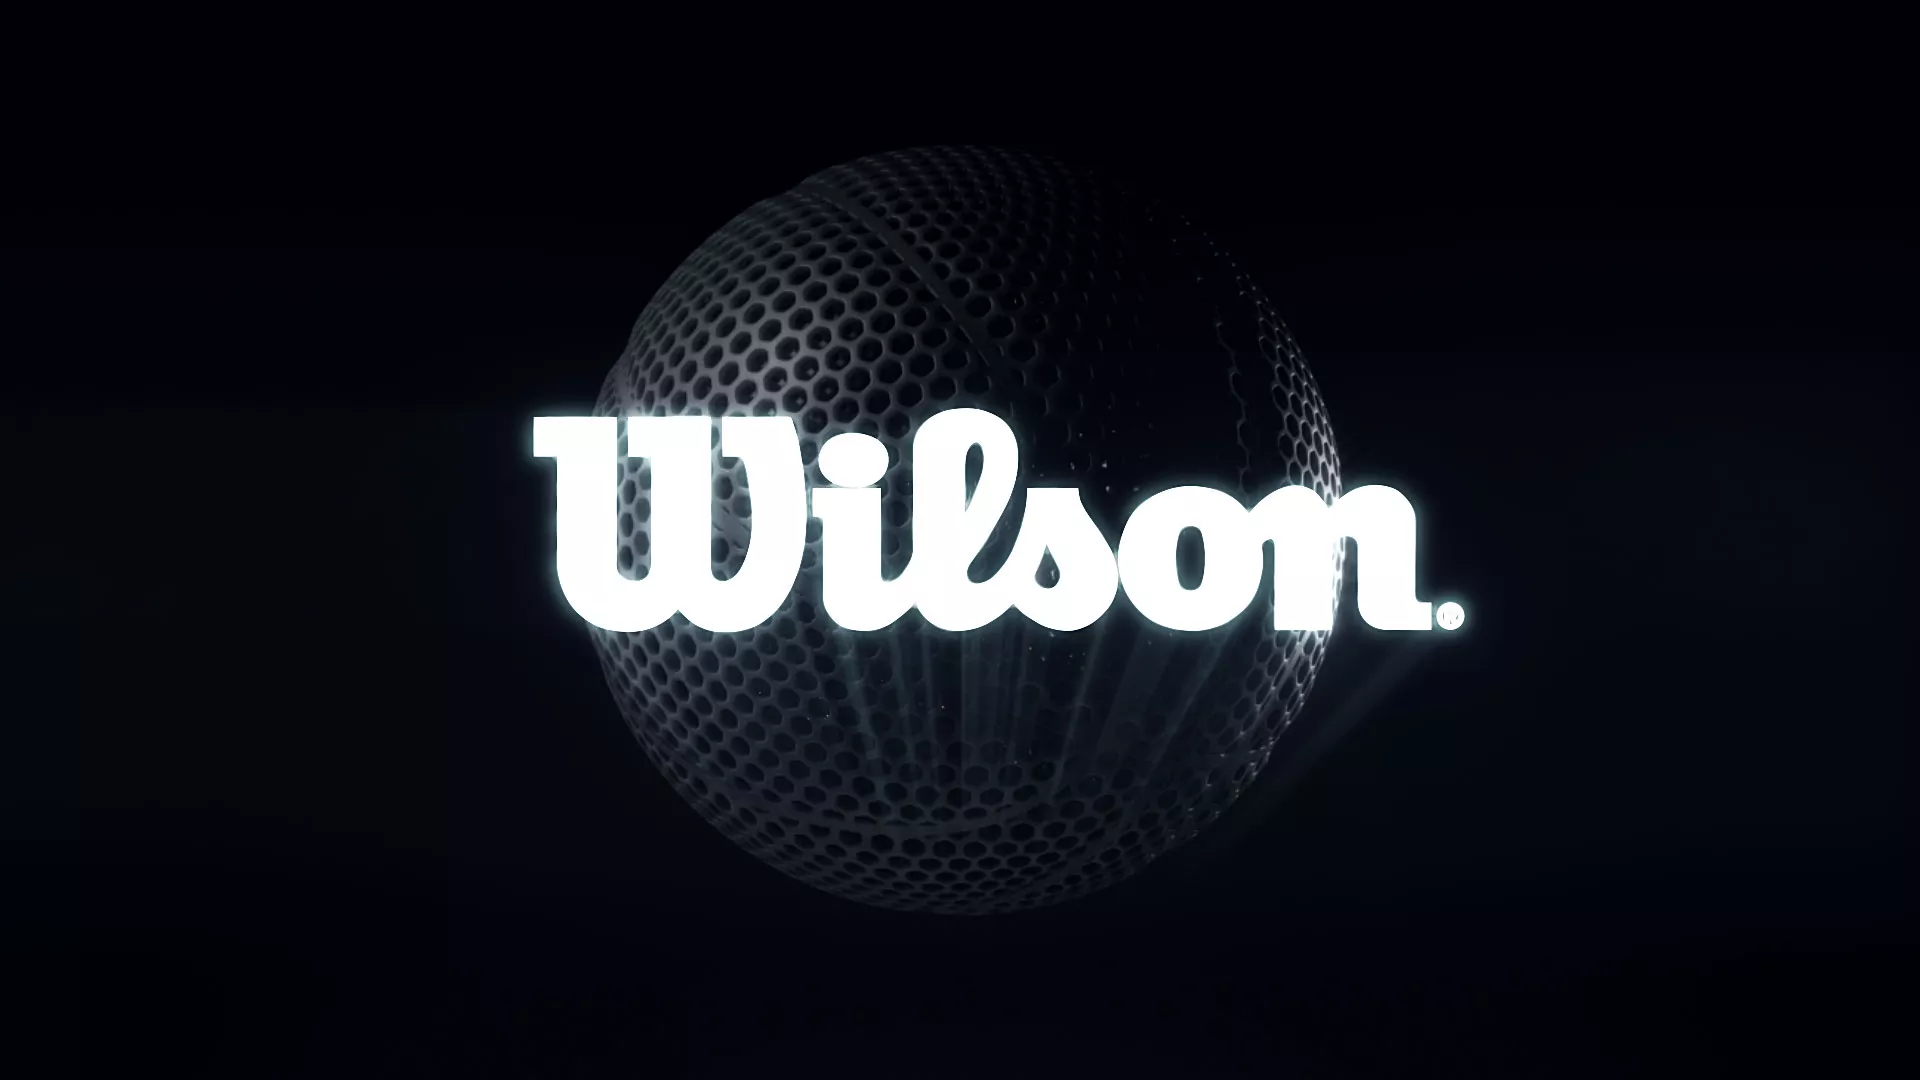 WW, Wilson, Styleframe, 08